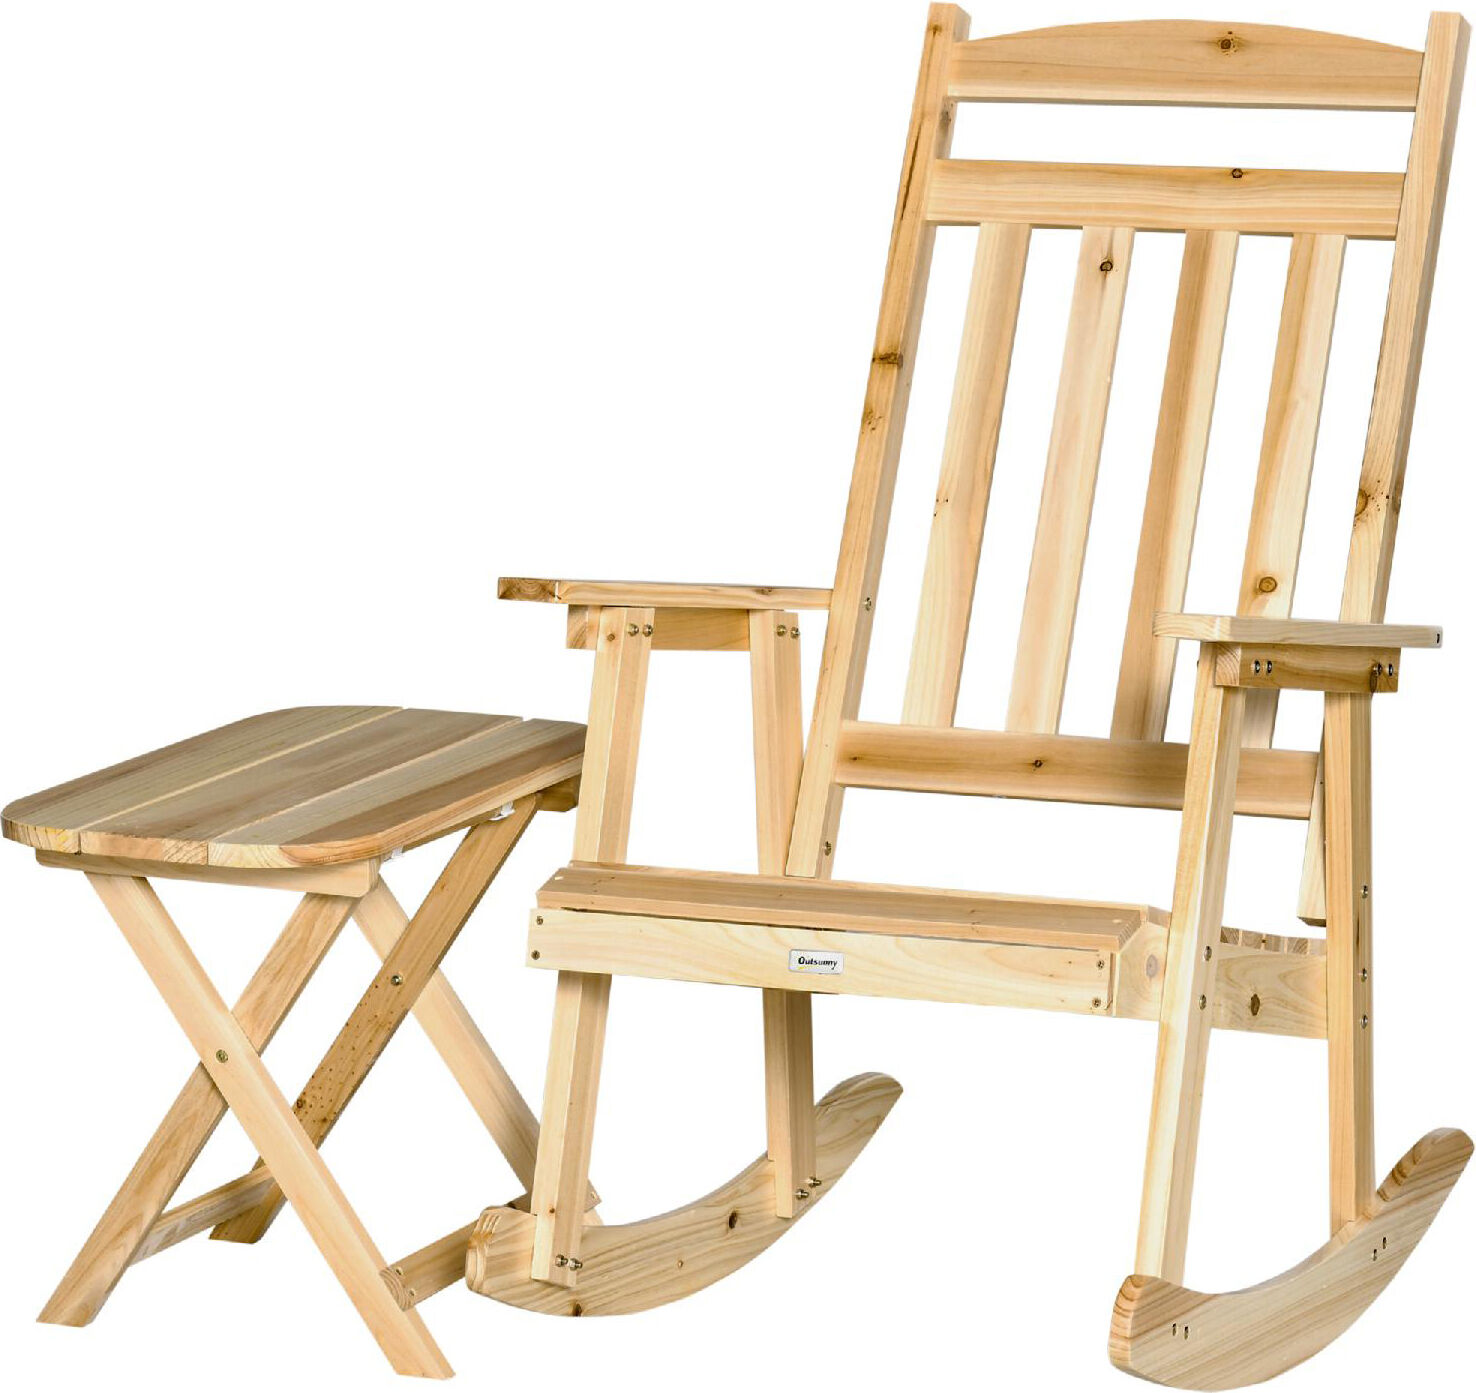 dechome 734nd84b sedia a dondolo da giardino in legno di abete 115x67x89h cm + tavolino pieghevole in legno - 734nd84b